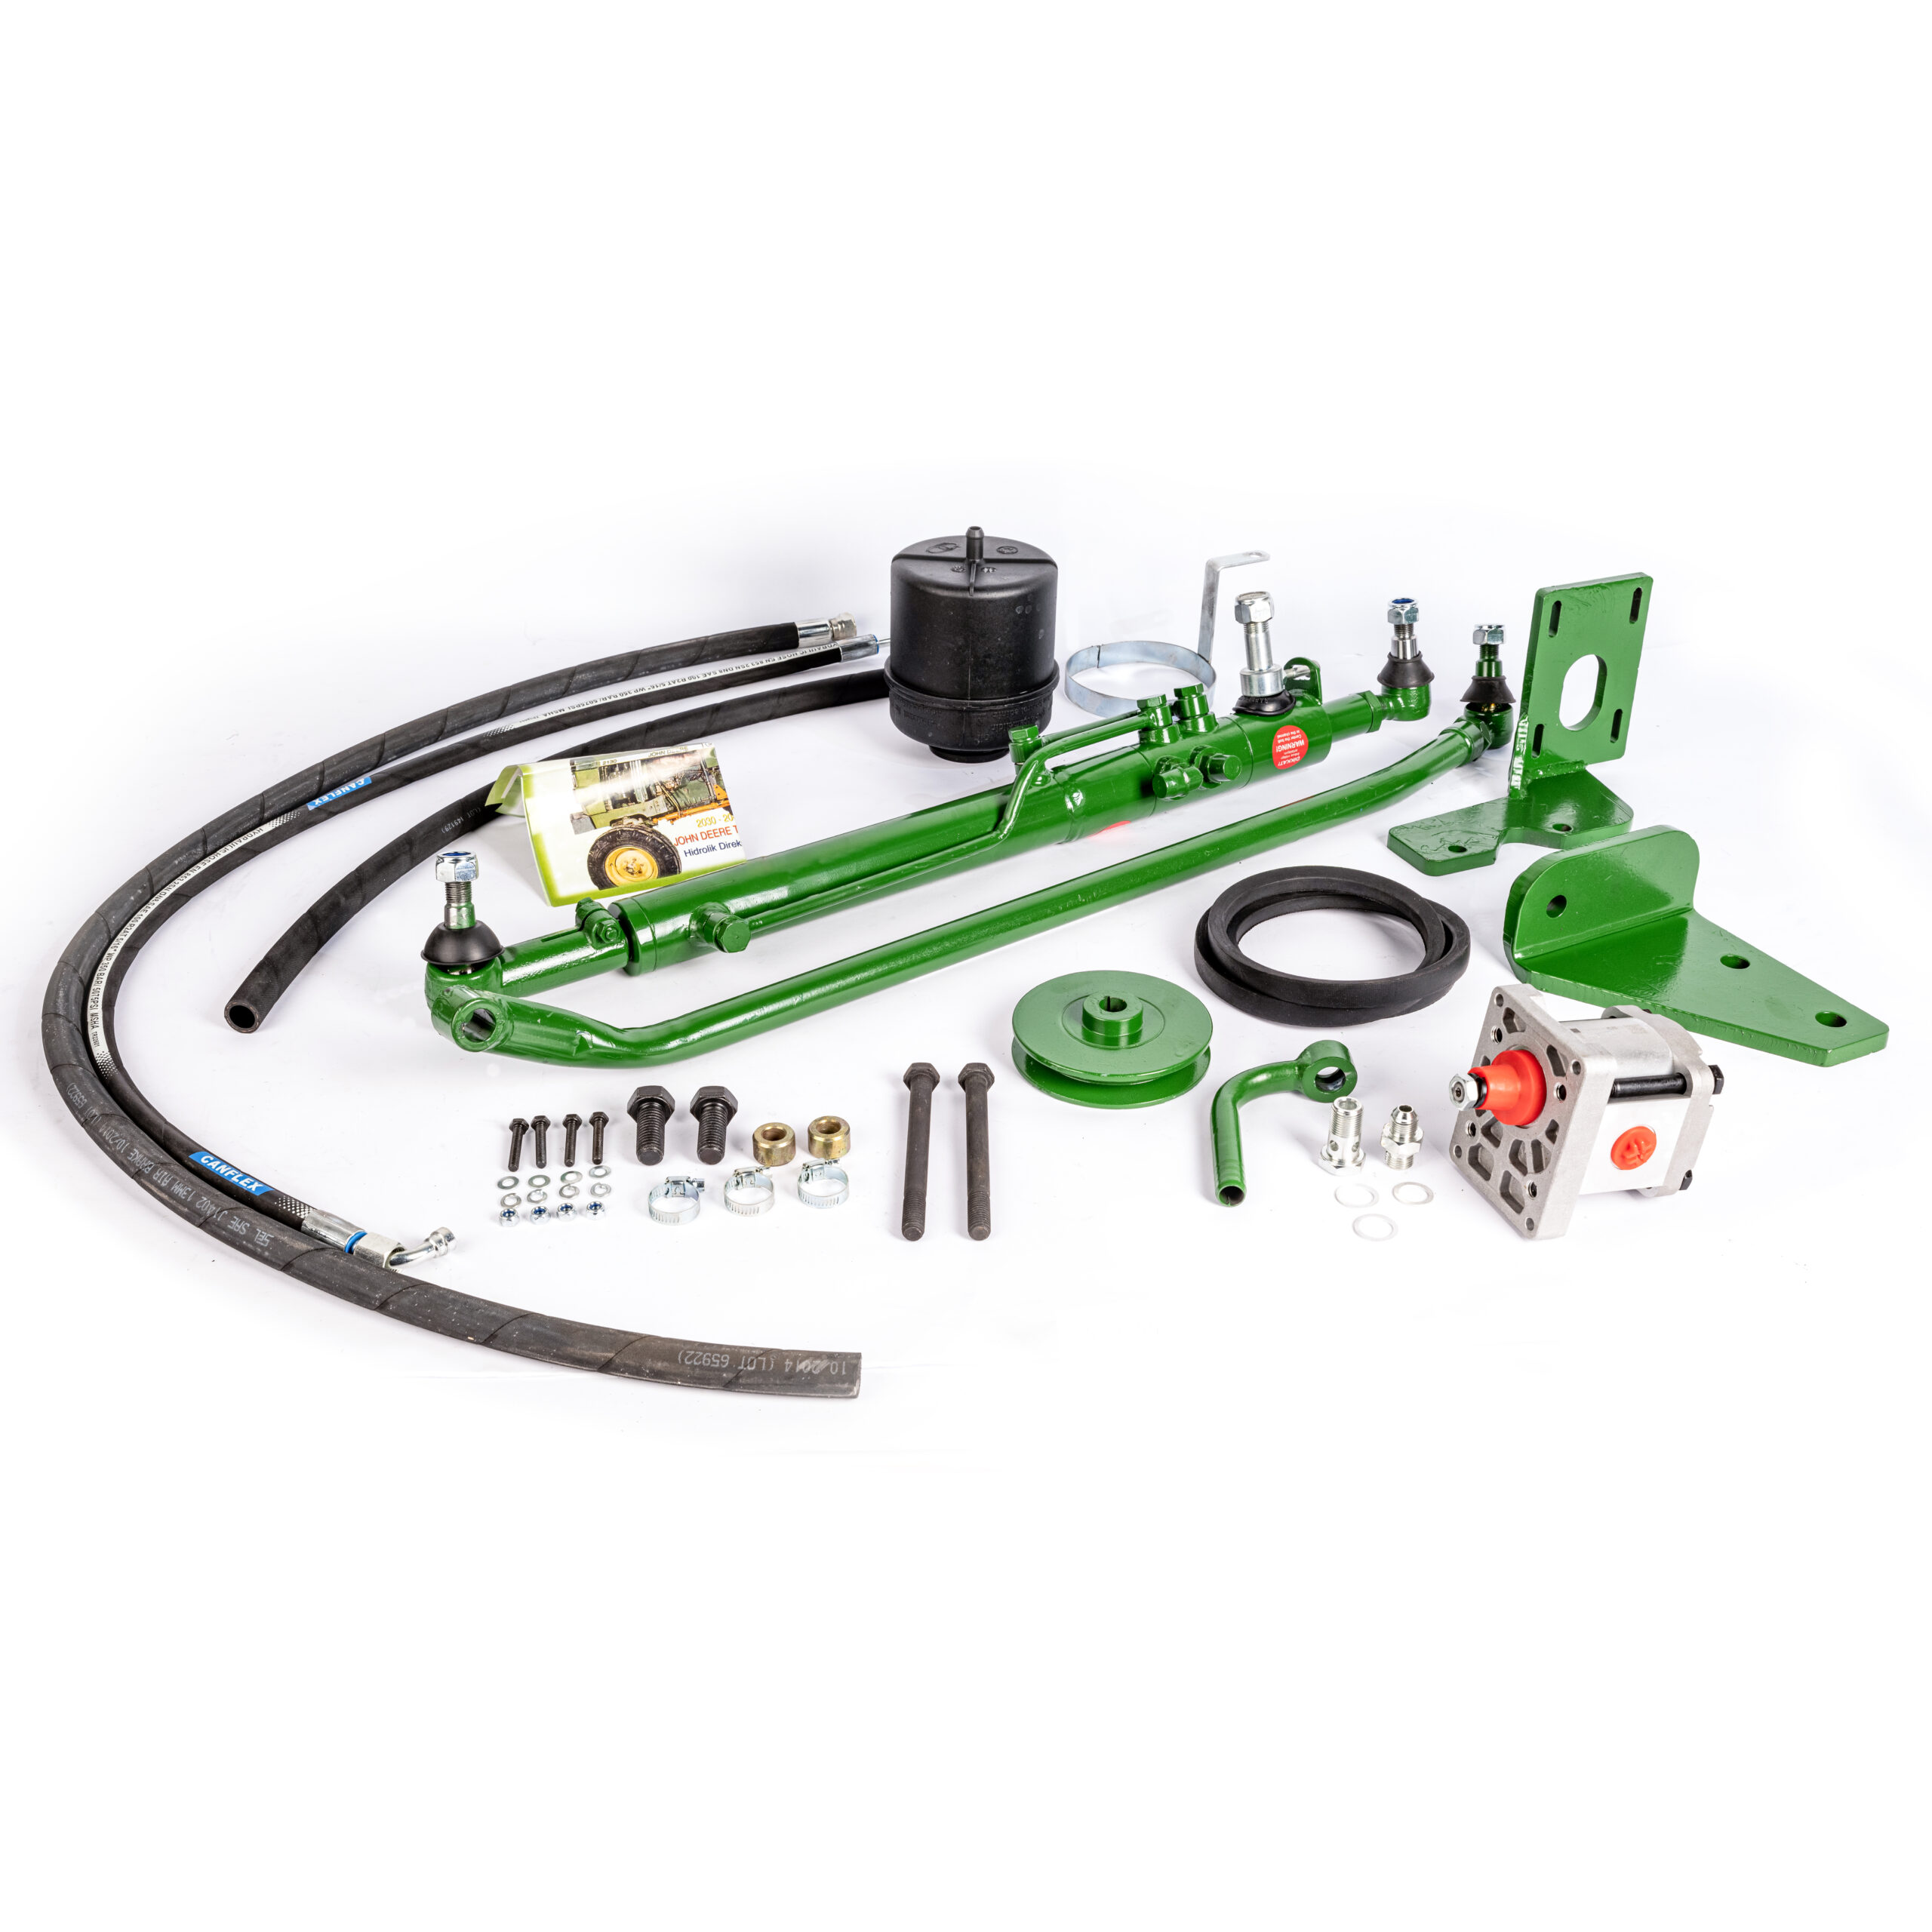 Power Steering Kit for John Deere 2030 2040 2130